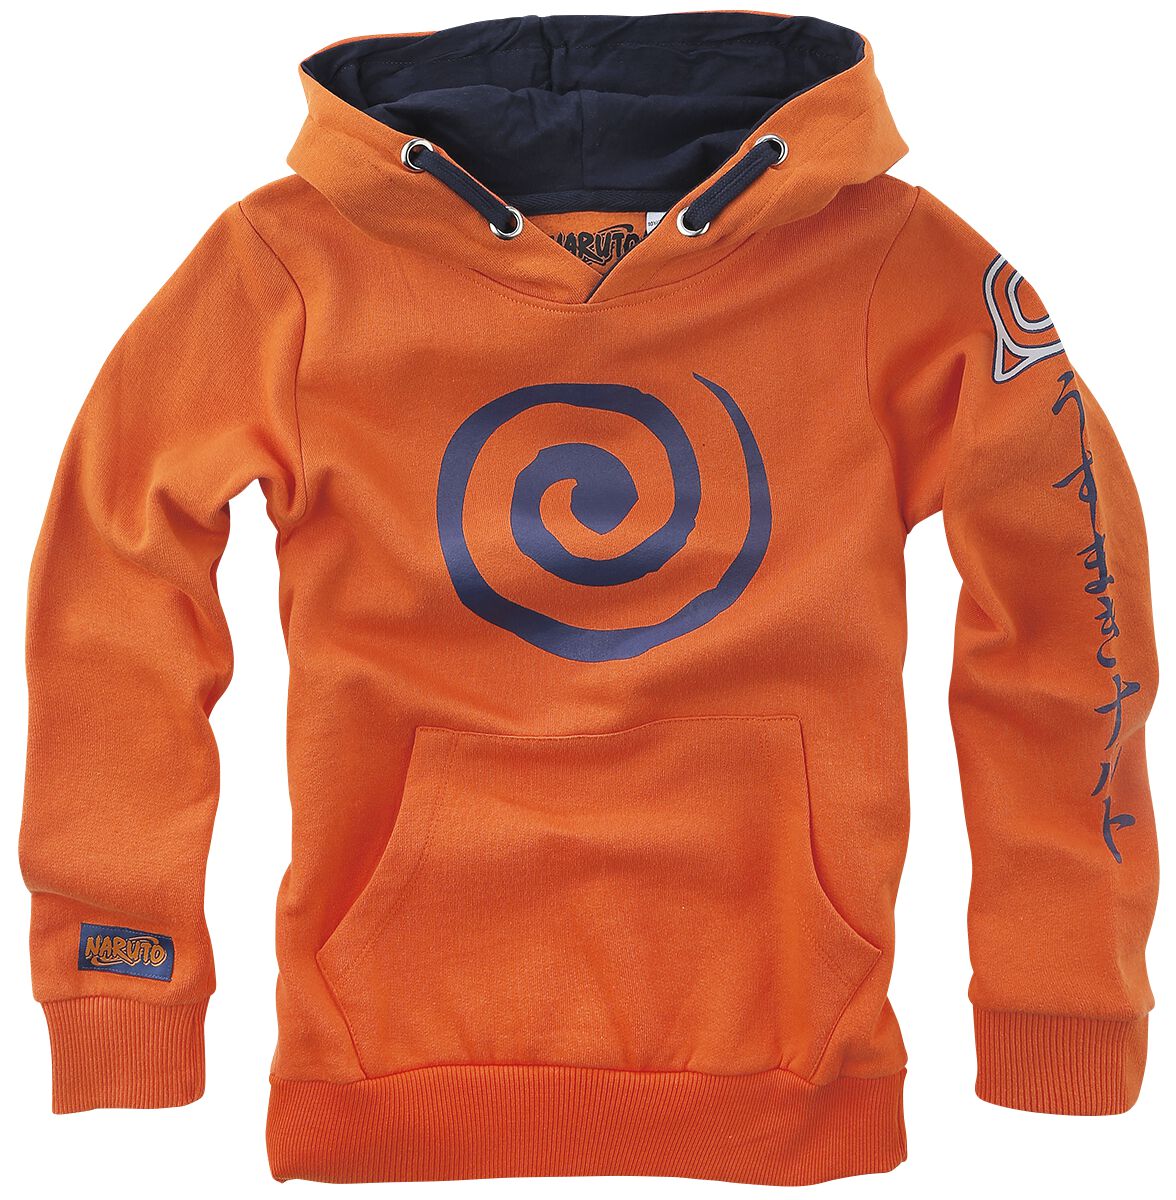 Naruto - Anime Kapuzenpullover - Kids - Sign - 116 bis 164 - Größe 164 - orange  - EMP exklusives Merchandise!